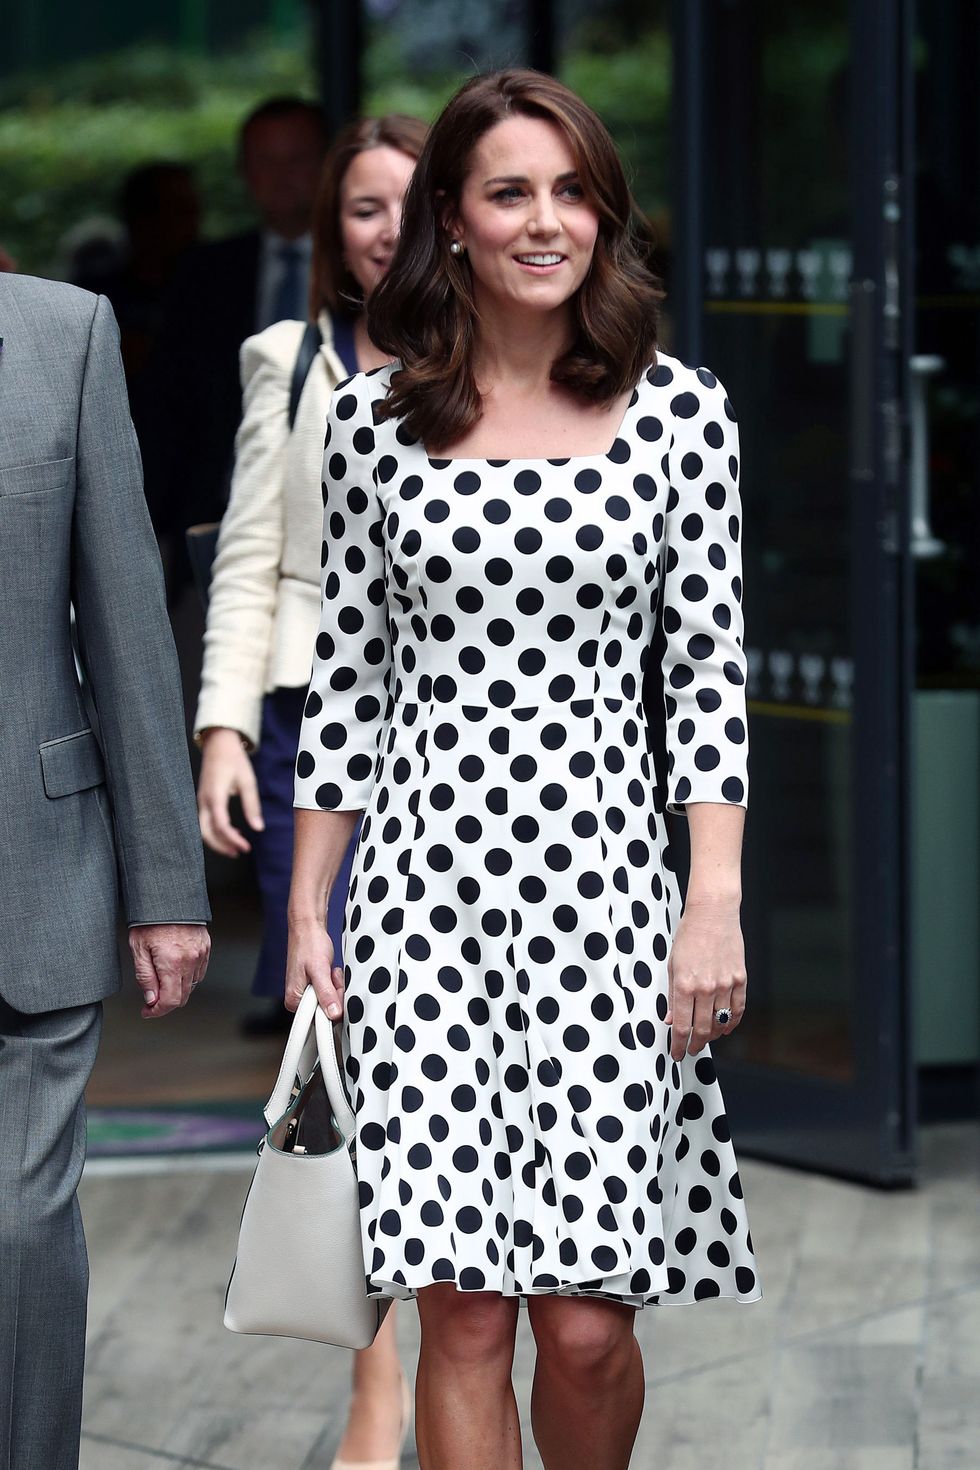 Kate Middleton Dolce & Gabanna Polka Dot Dress